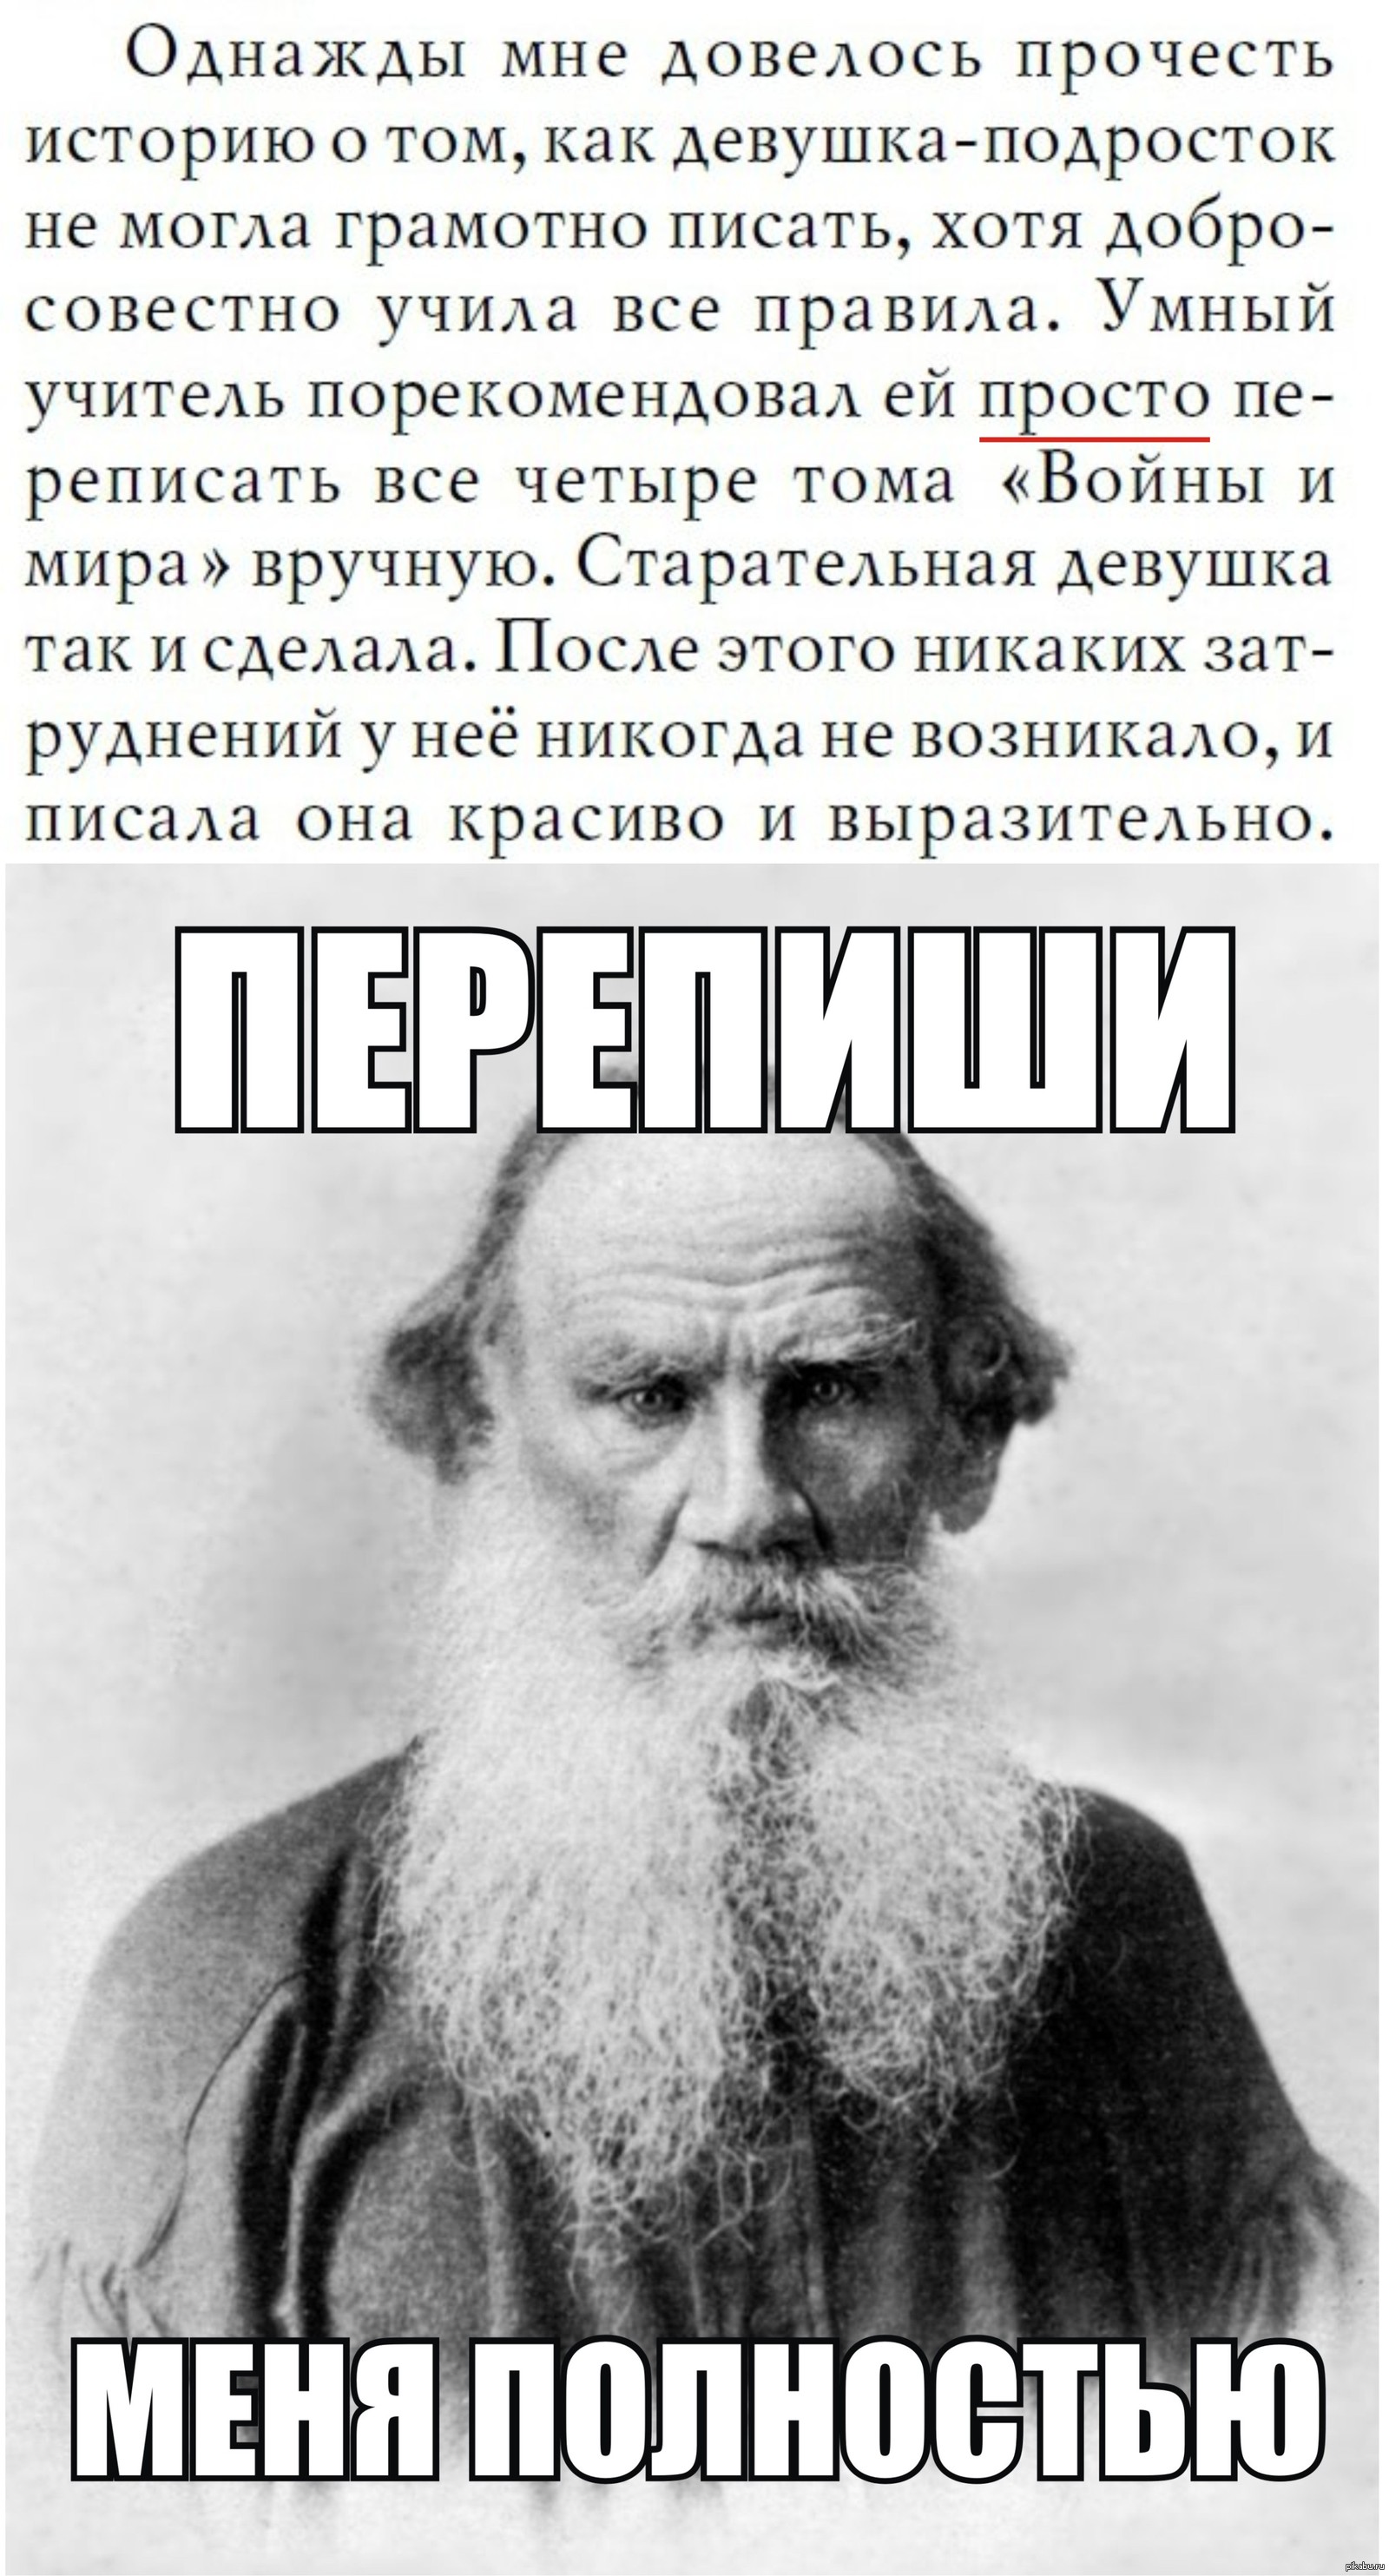 Толстой быстрые ответы. Лев толстой. Шутки про Льва Толстого. Мемы про войну и мир Толстого.